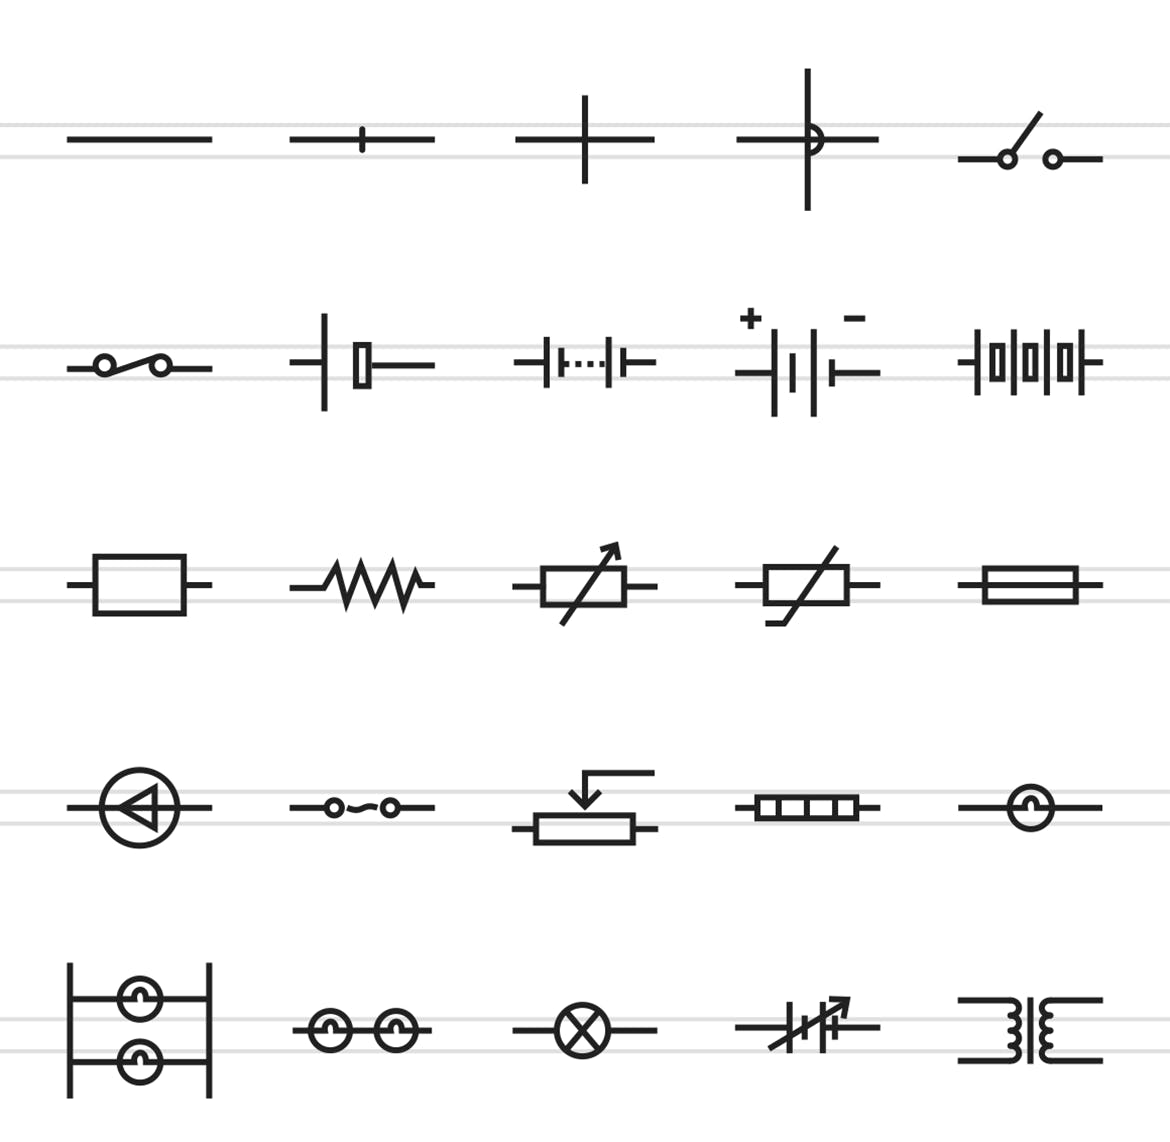 50枚电路线路板主题矢量线性蚂蚁素材精选图标 50 Electric Circuits Line Icons插图(1)